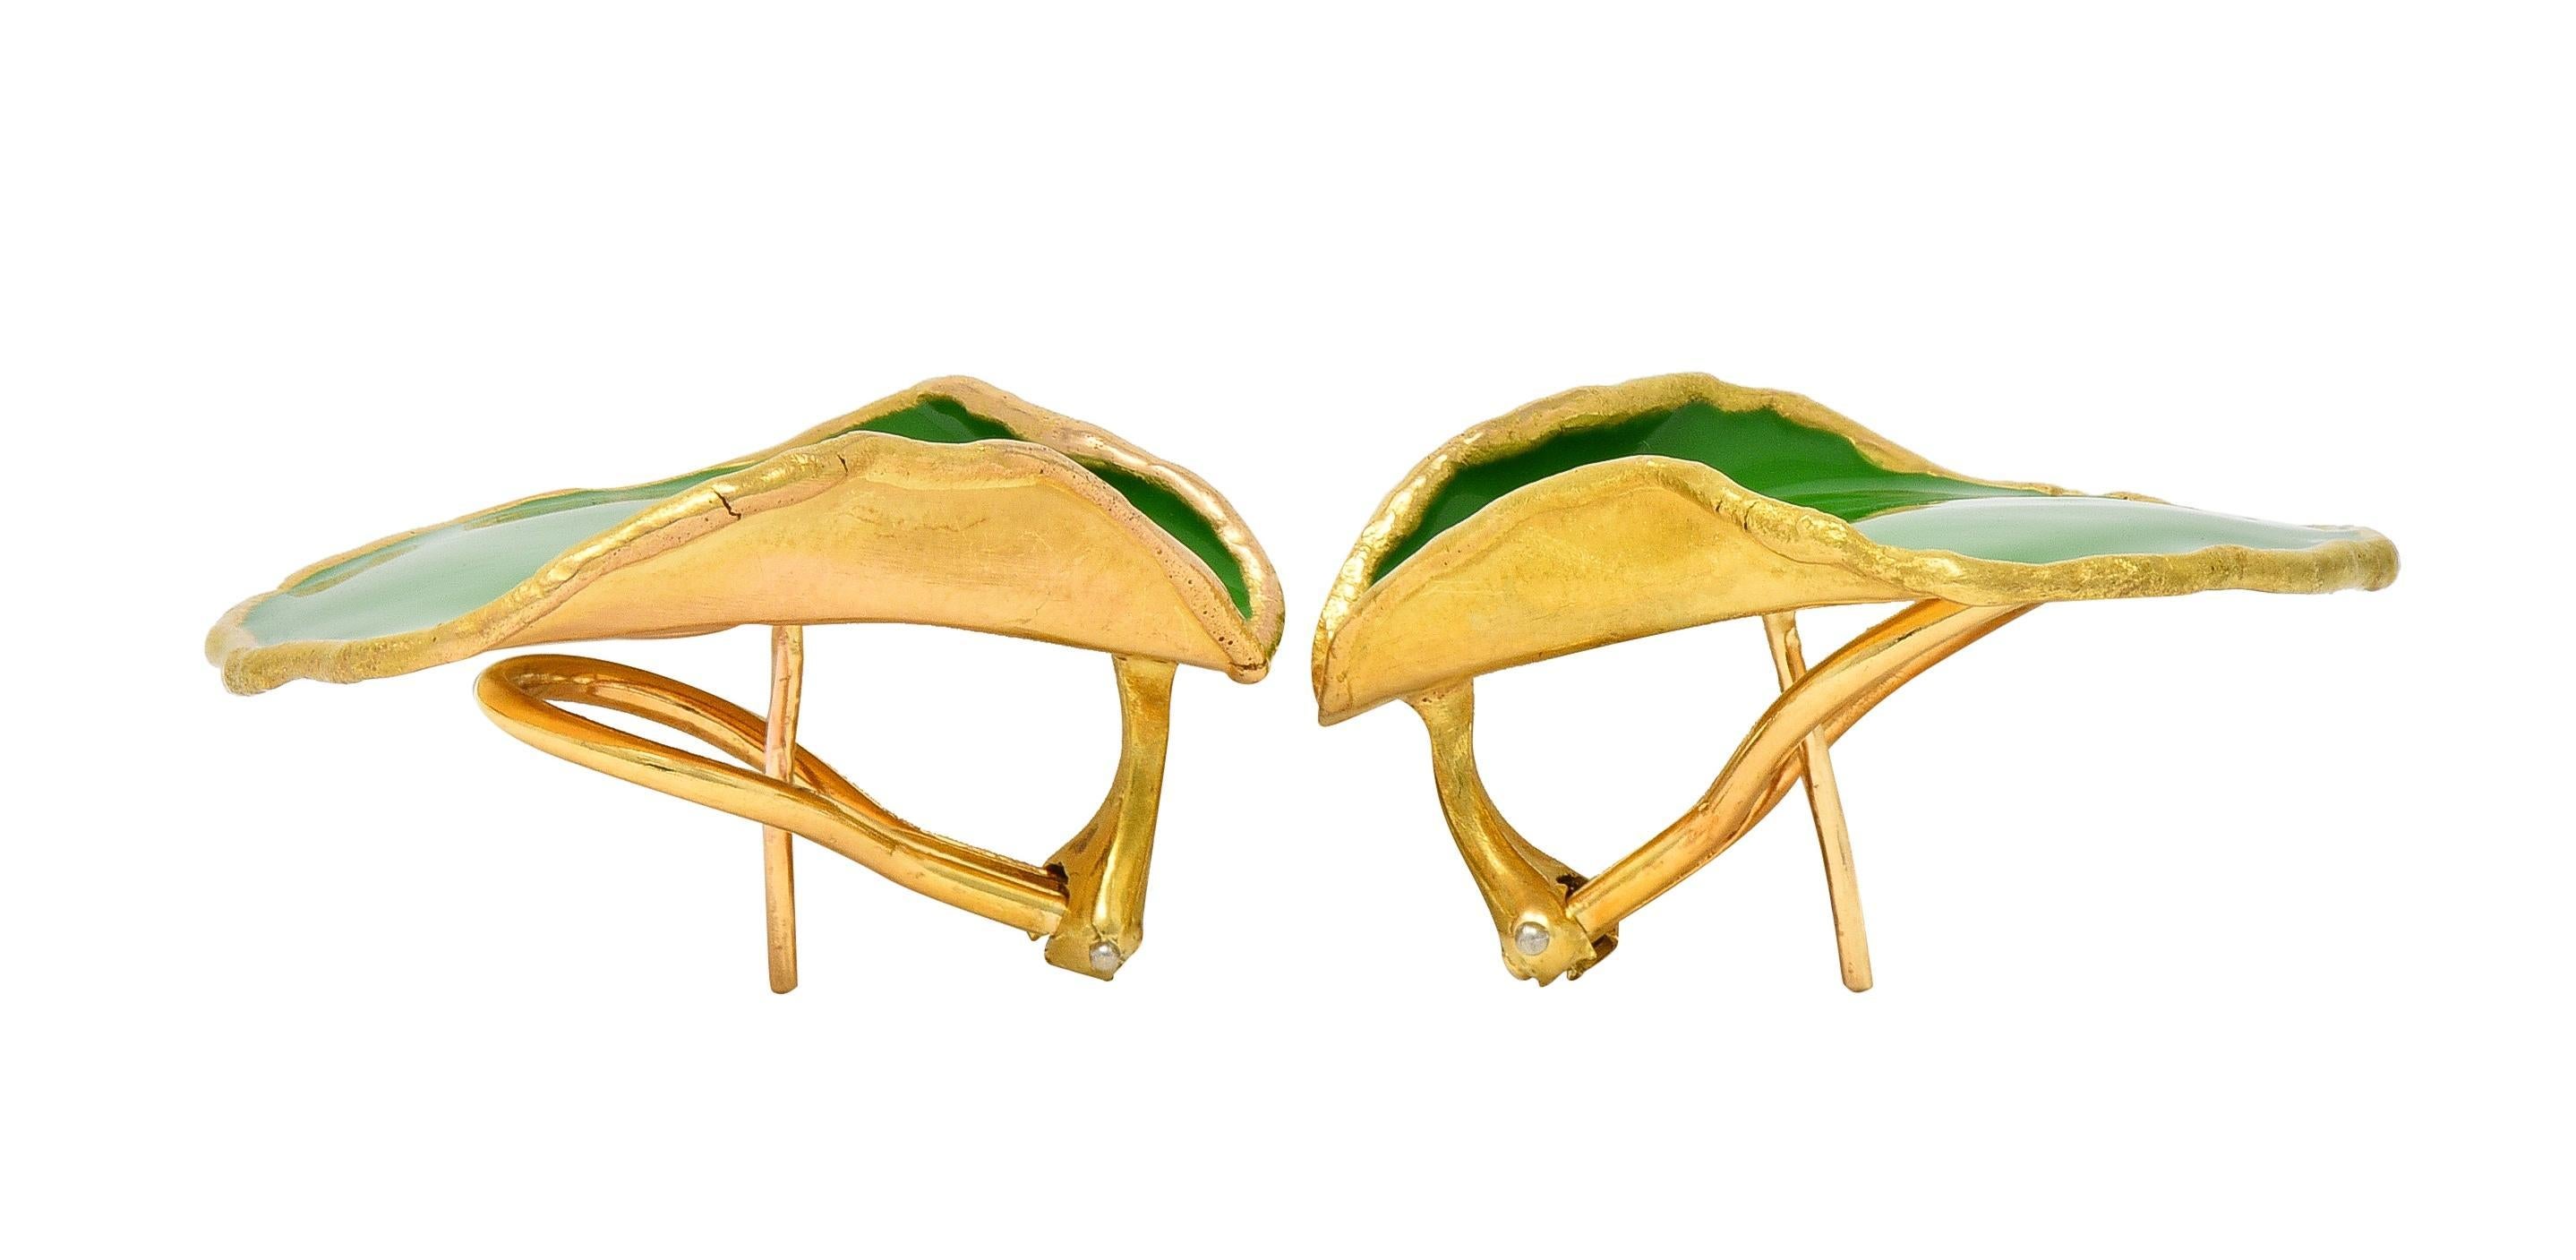 Tiffany & Co. 1979 Green Enamel 18 Karat Yellow Gold Vintage Rose Petal Earrings 5